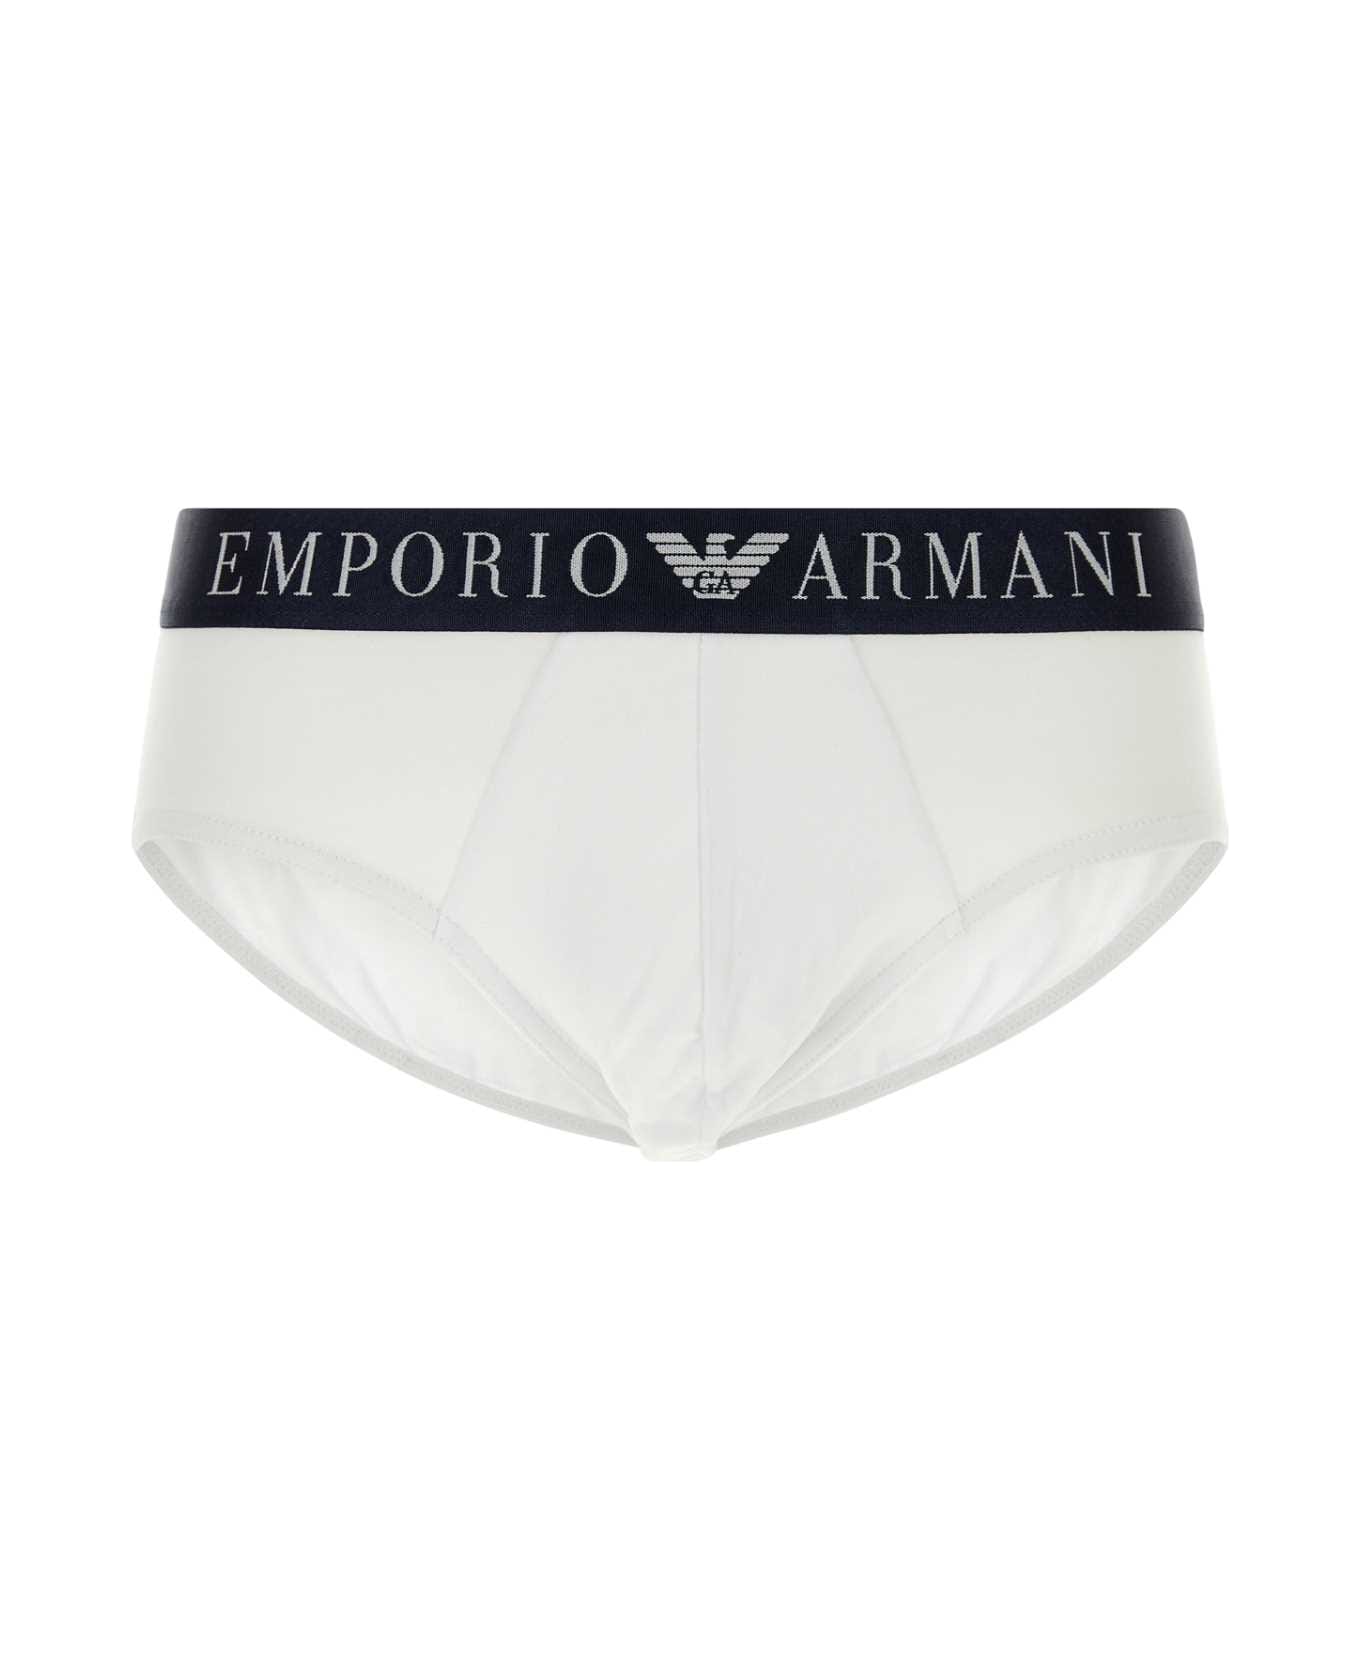 Emporio Armani White Stretch Cotton Brief - 00010 アンダーウェア